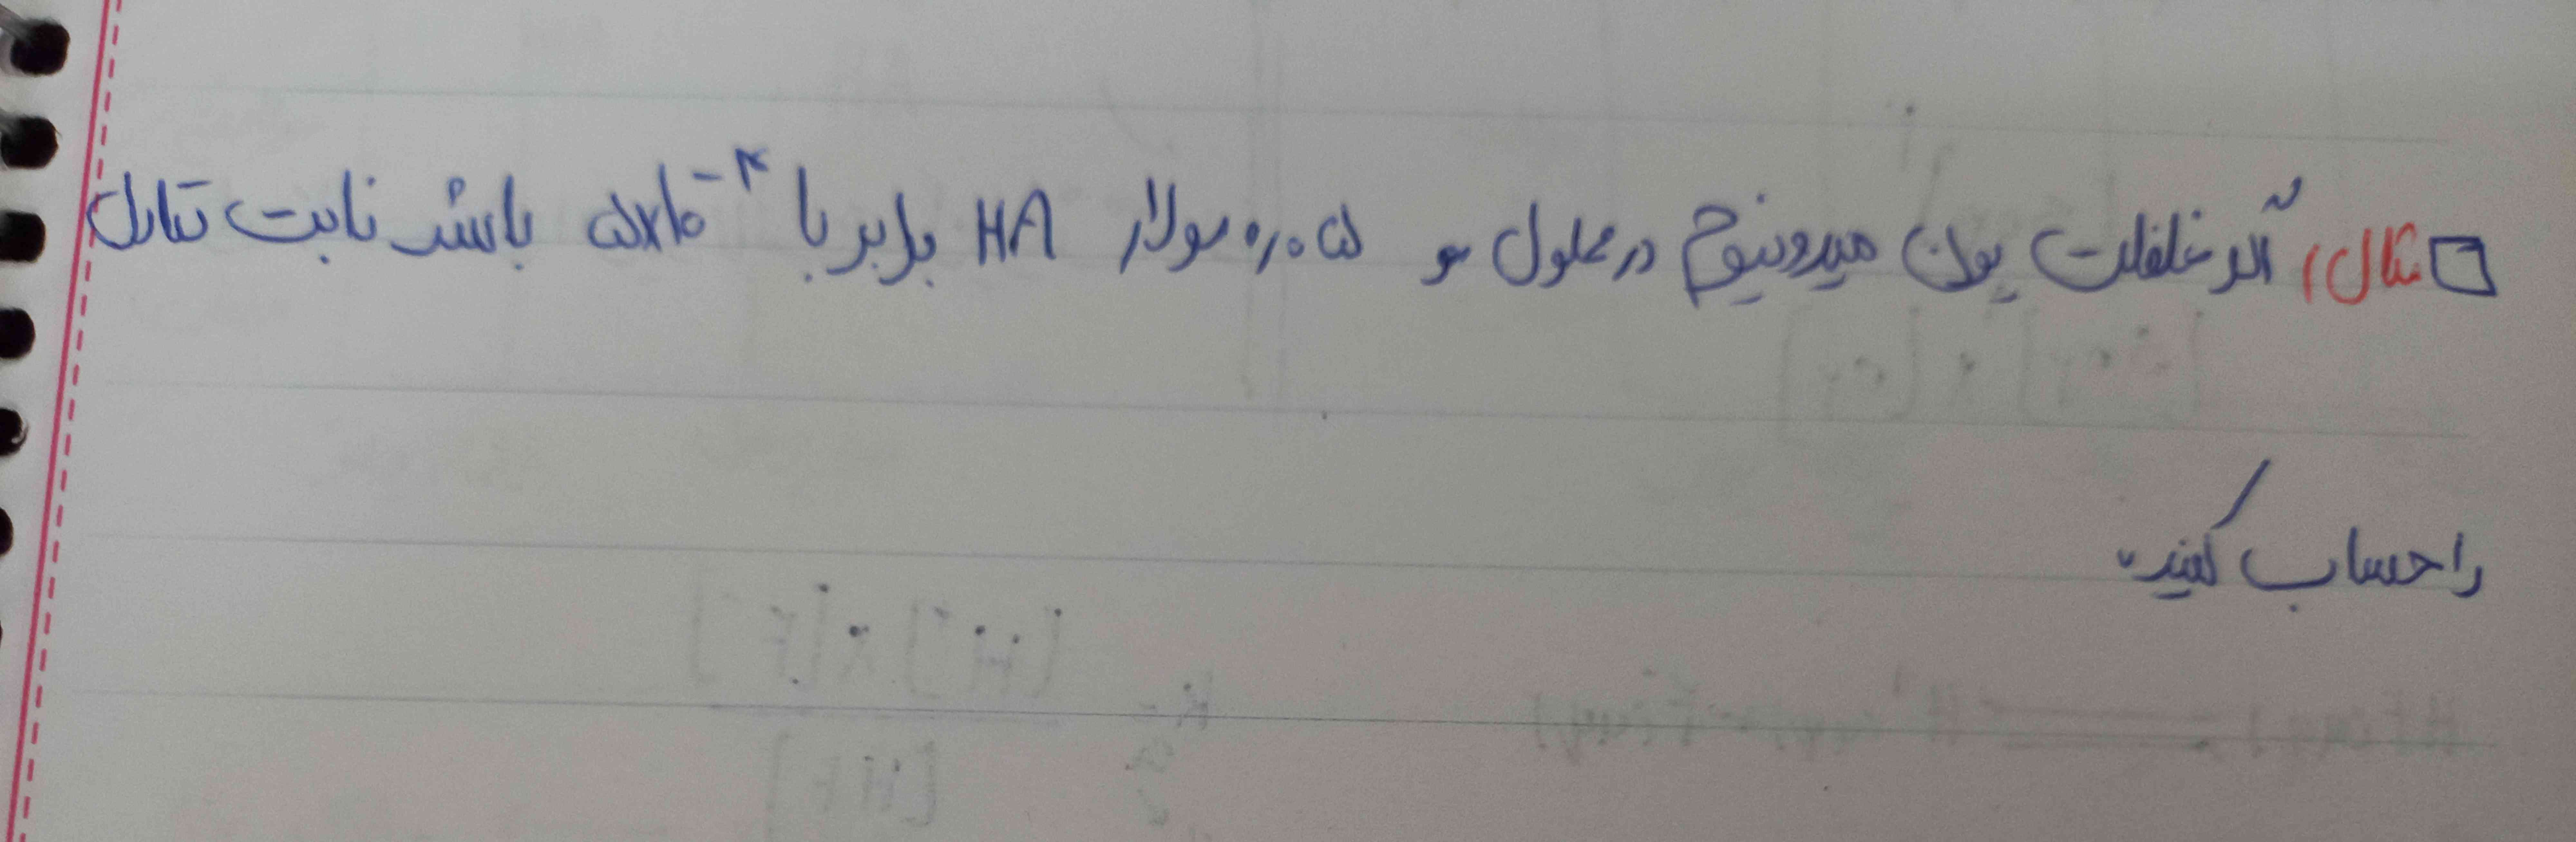 اگر غلظت یون هیدرونیوم در محلول5 0/0مولار HA برابر با پنج ضربدر ده به توان منفی چهار باشد ثابت تعادل را حساب کنید.